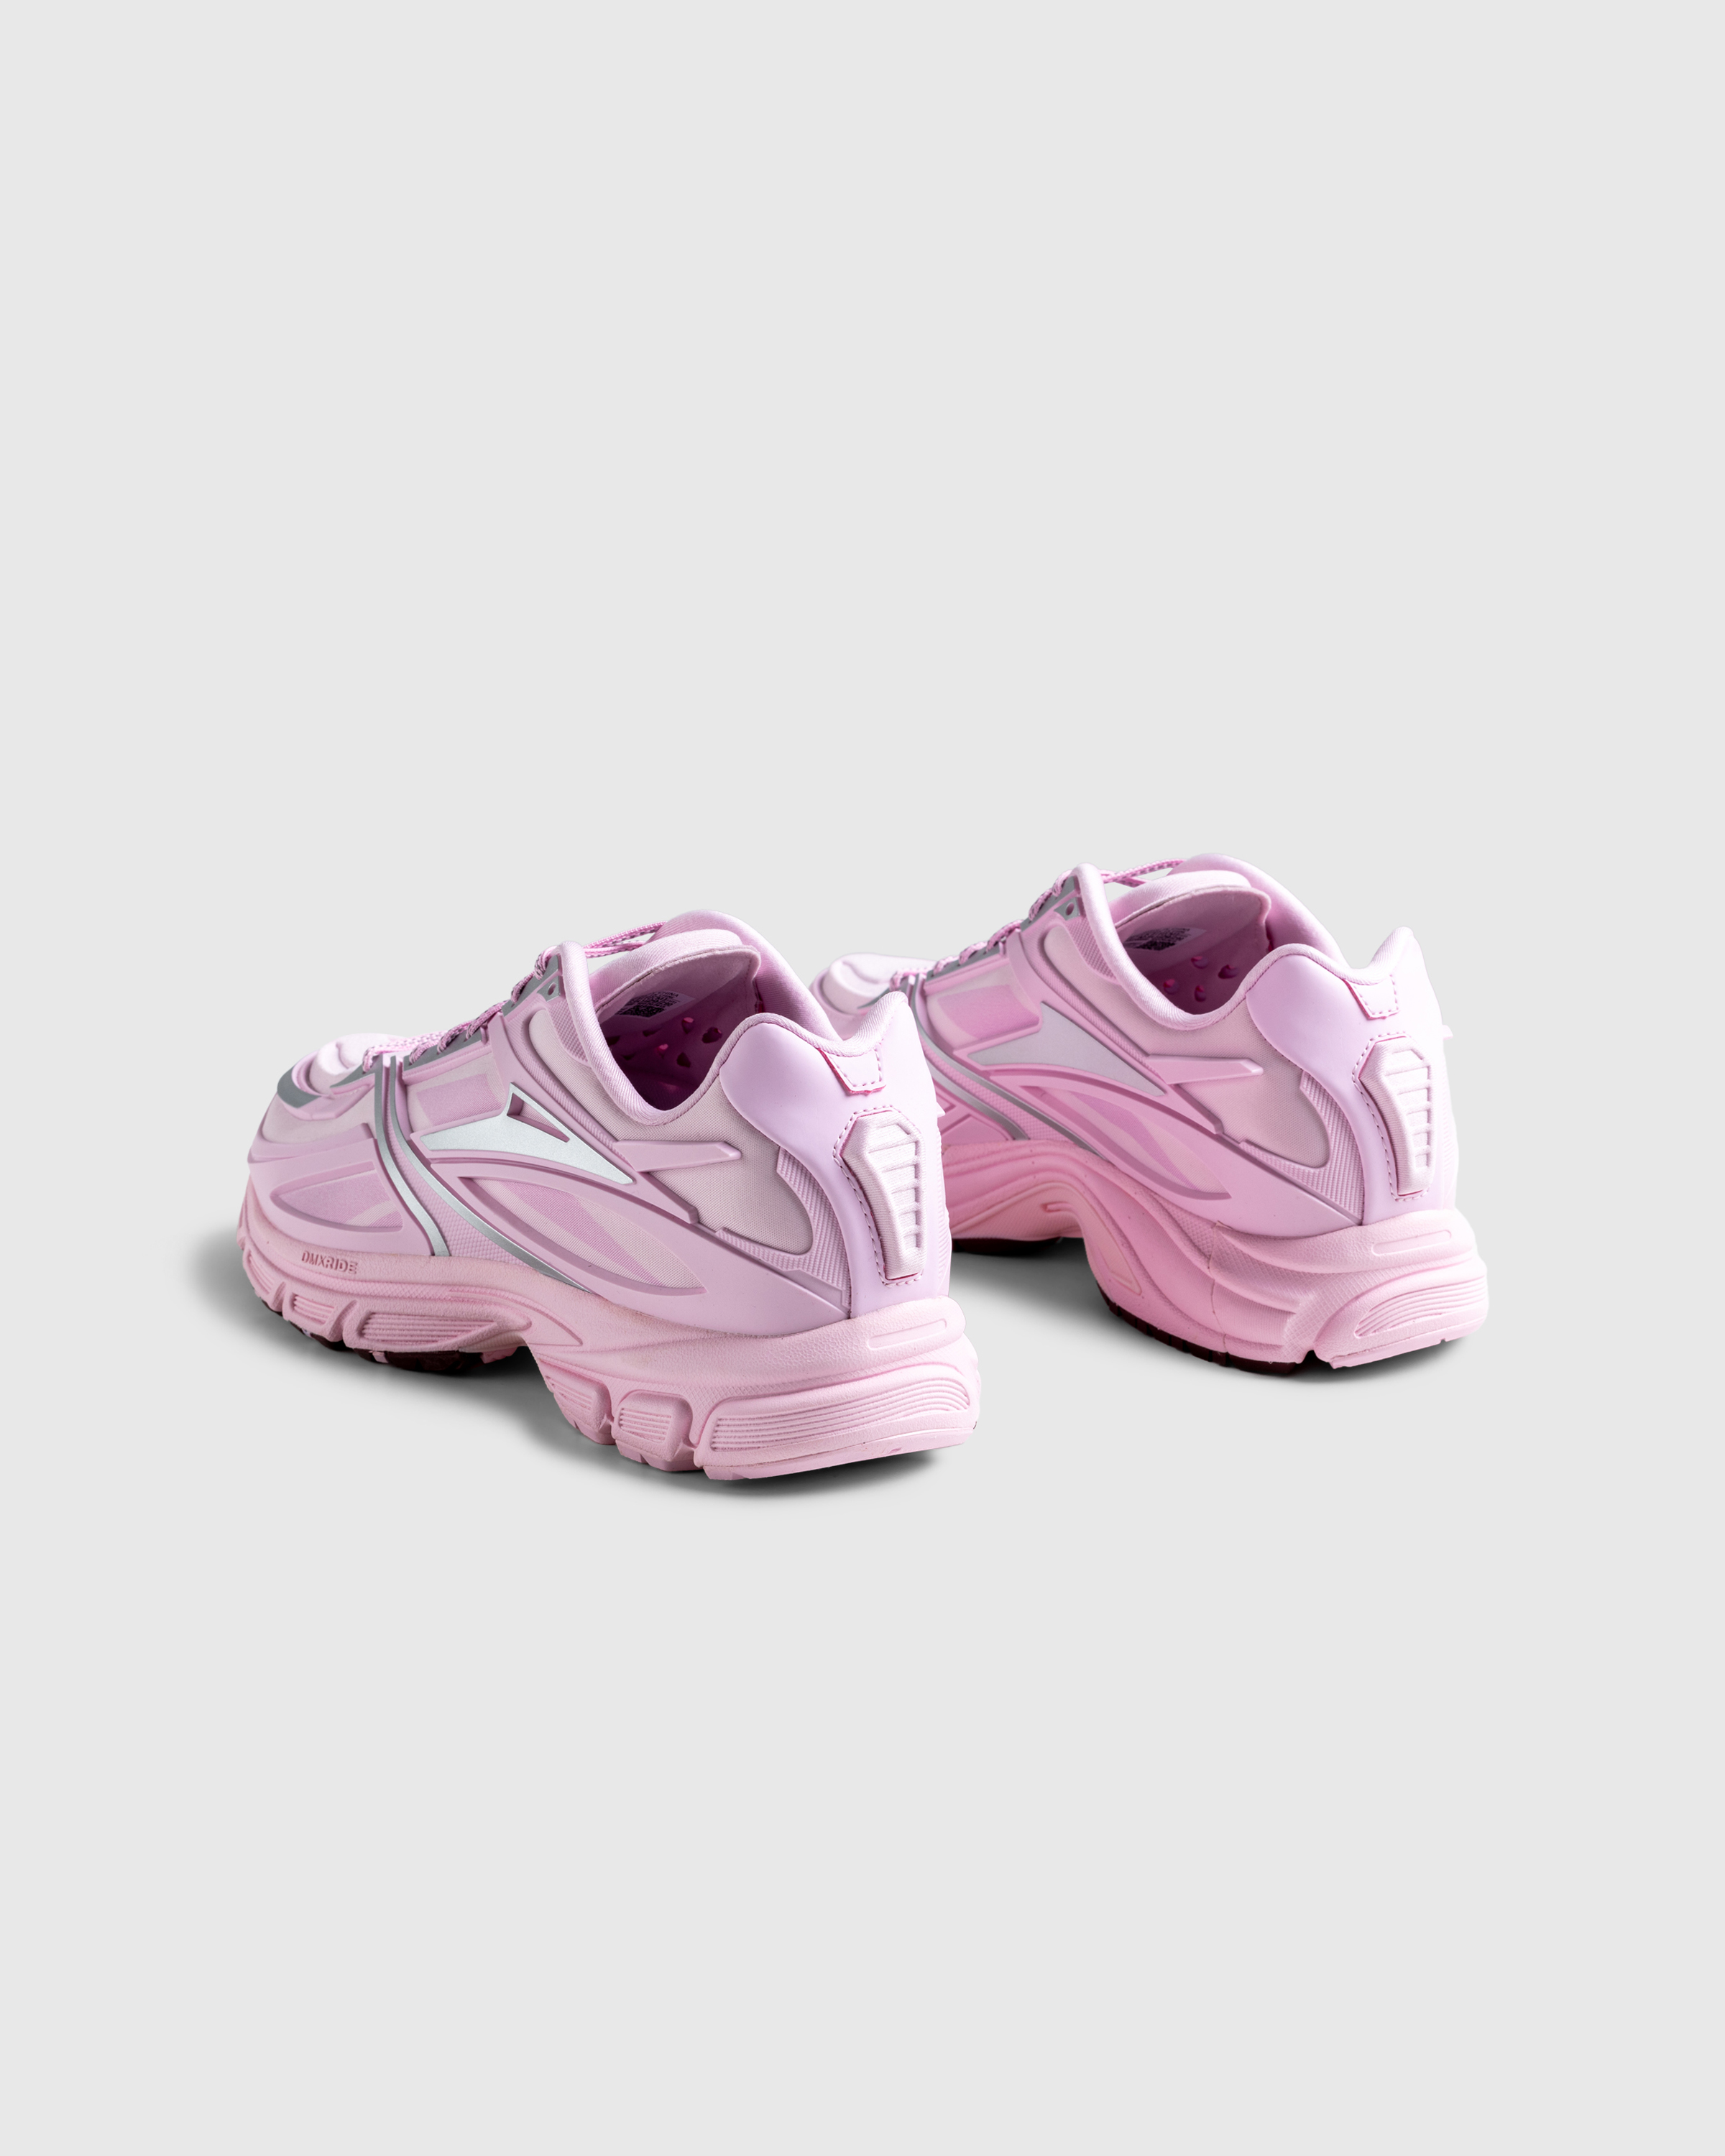 Reebok – Premier Road Modern Dream Pink - Sneakers - Pink - Image 4